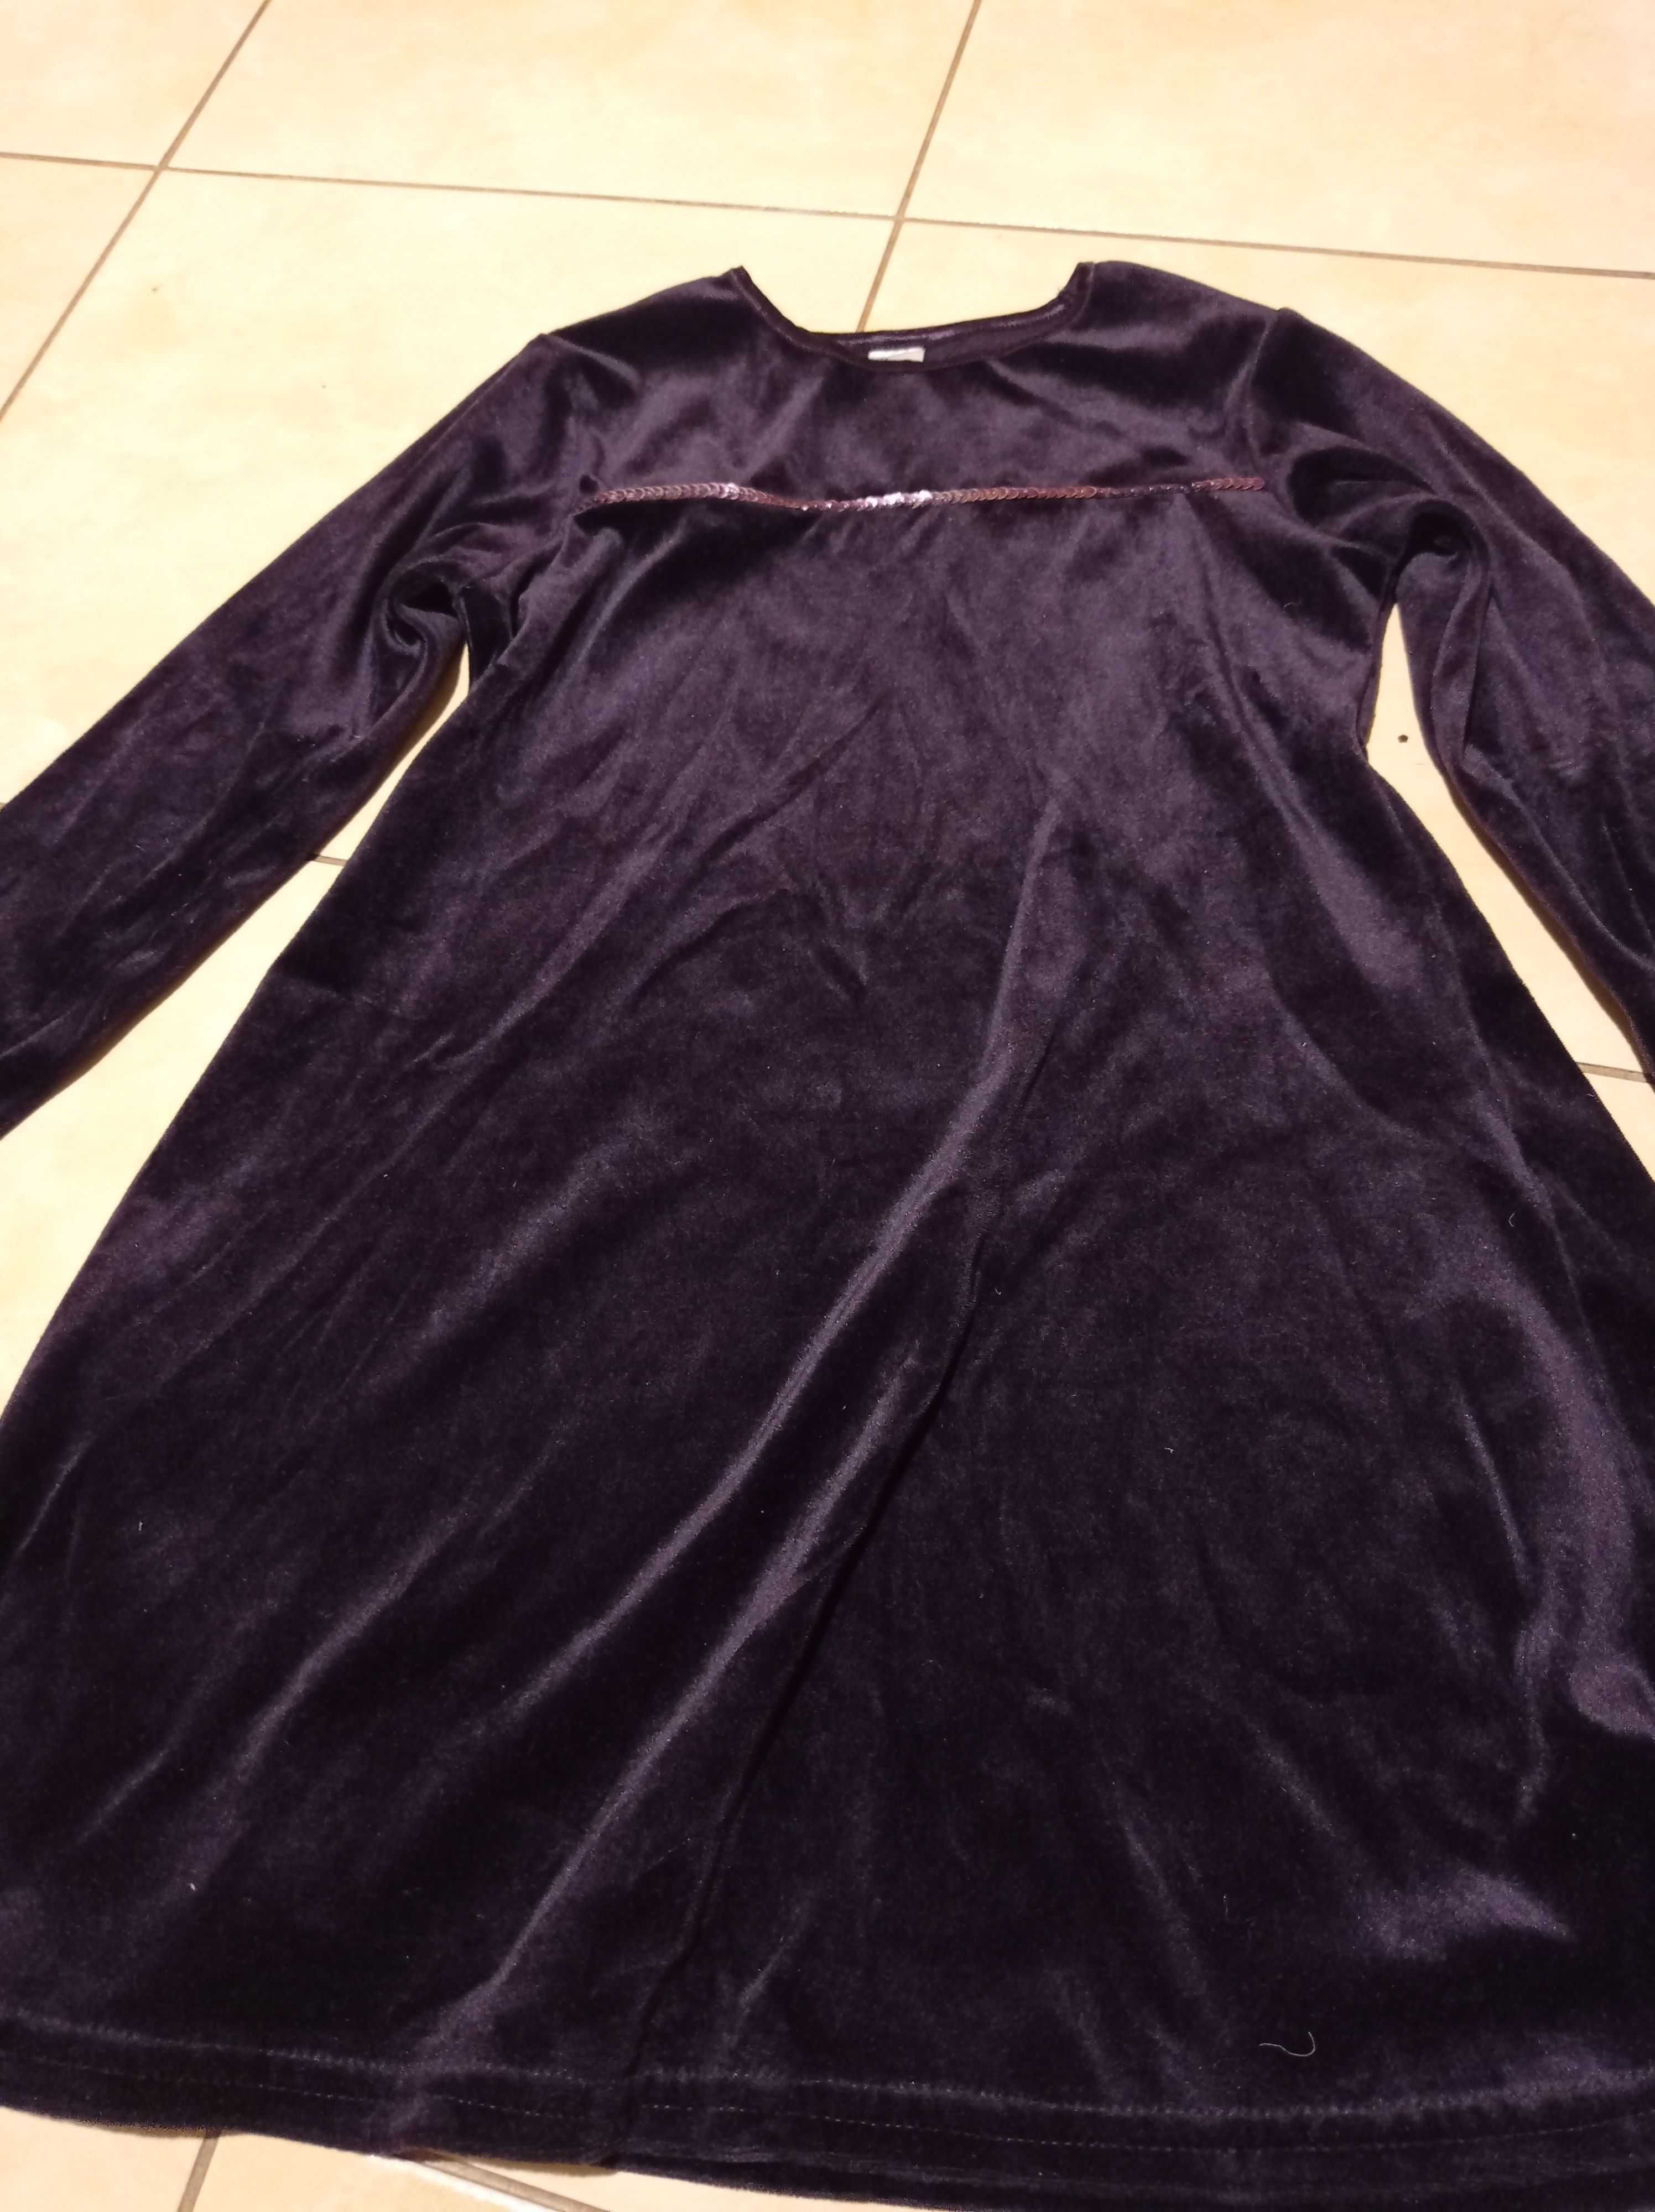 fioletowa połyskująca sukienka rozmiar 116